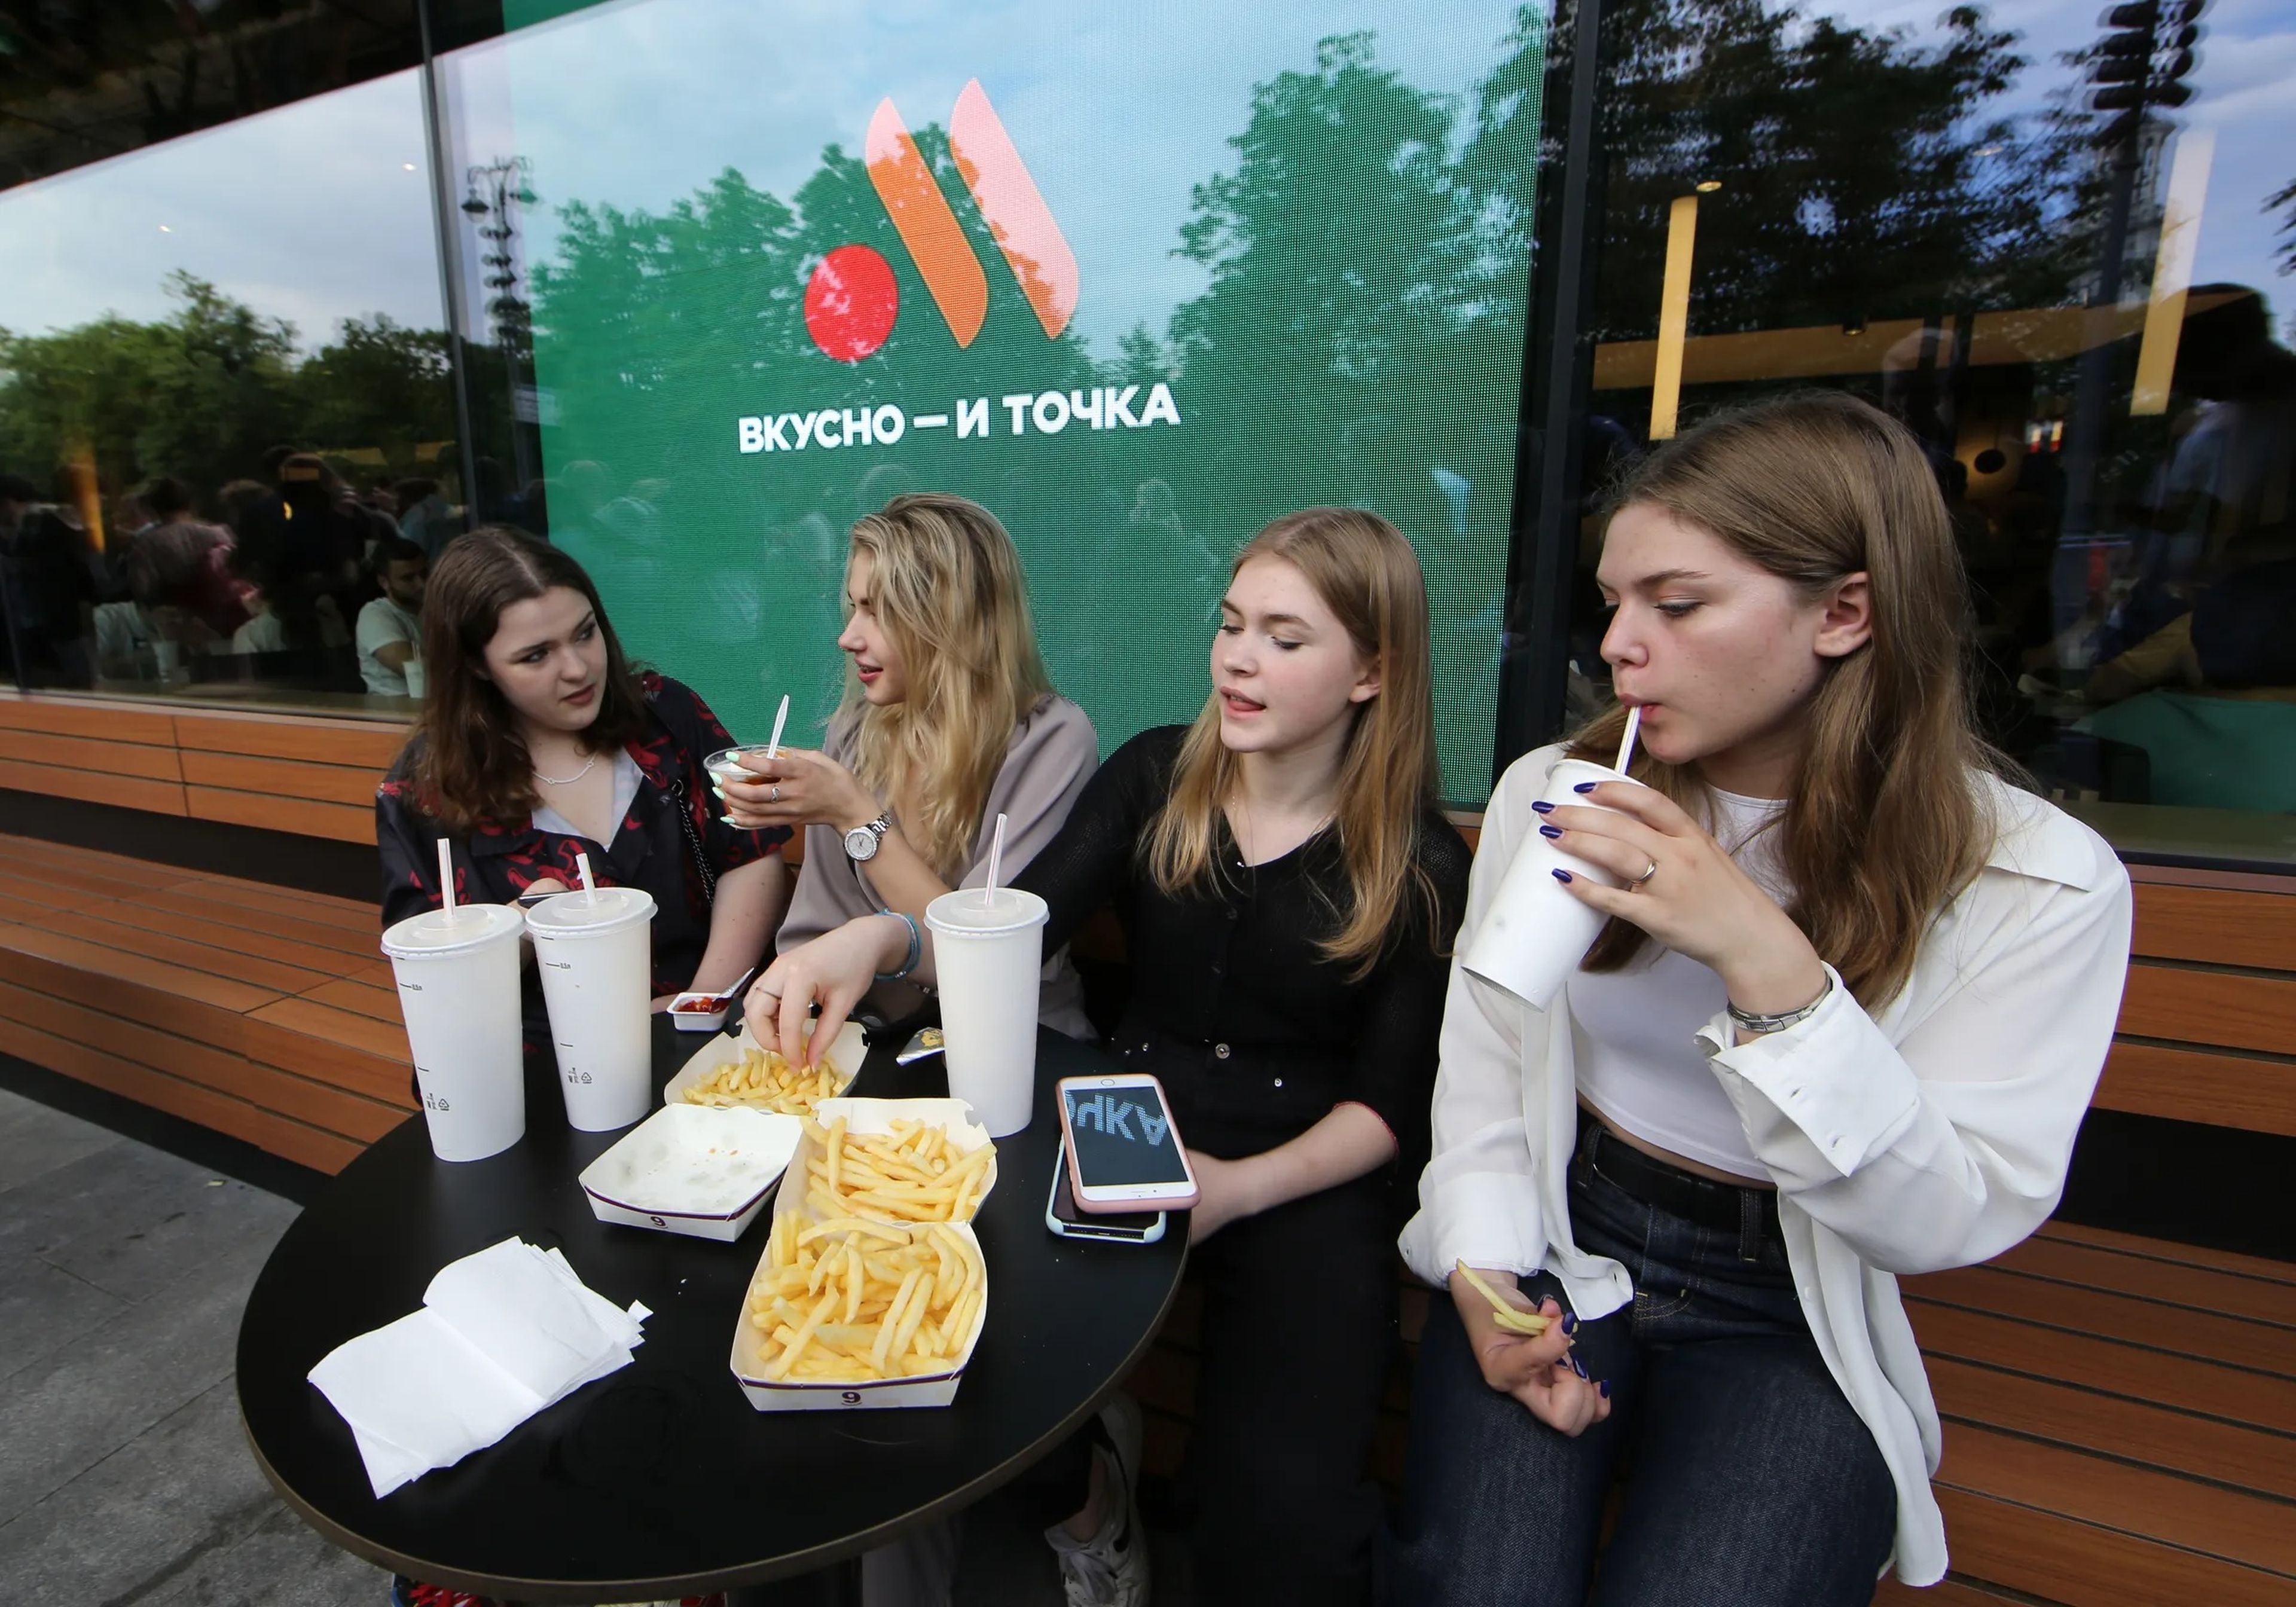 La gente visita el recién inaugurado restaurante Vkusno & tochka en un antiguo local de McDonald's en la plaza Pushkinskaya, el 12 de junio en Moscú, Rusia.